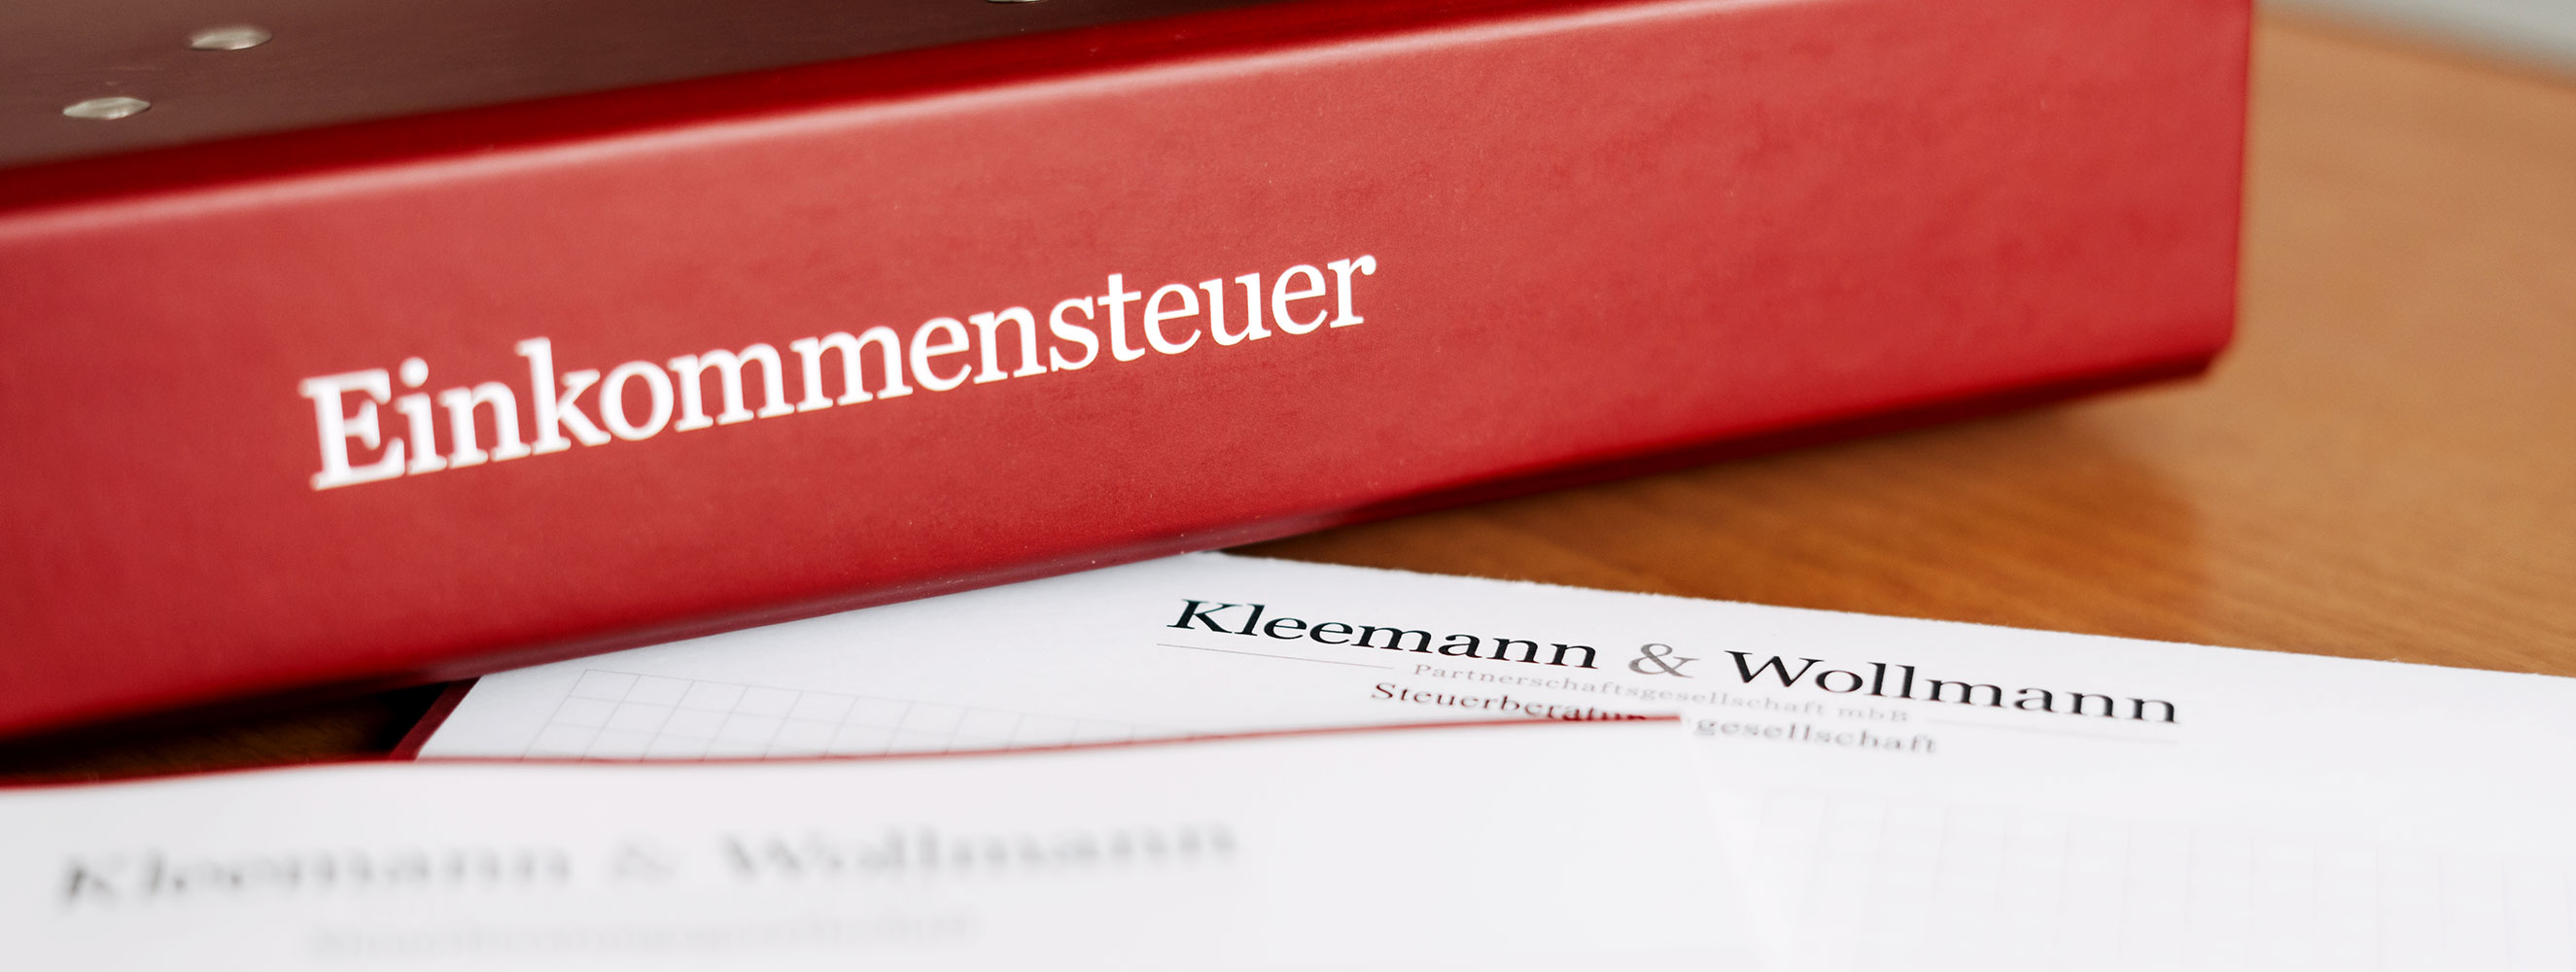 Kleemann & Wollmann Partnerschaftsgesellschaft mbB Berlin | Steuerberater, Wirtschaftsprüfer, Rechtsanwalt